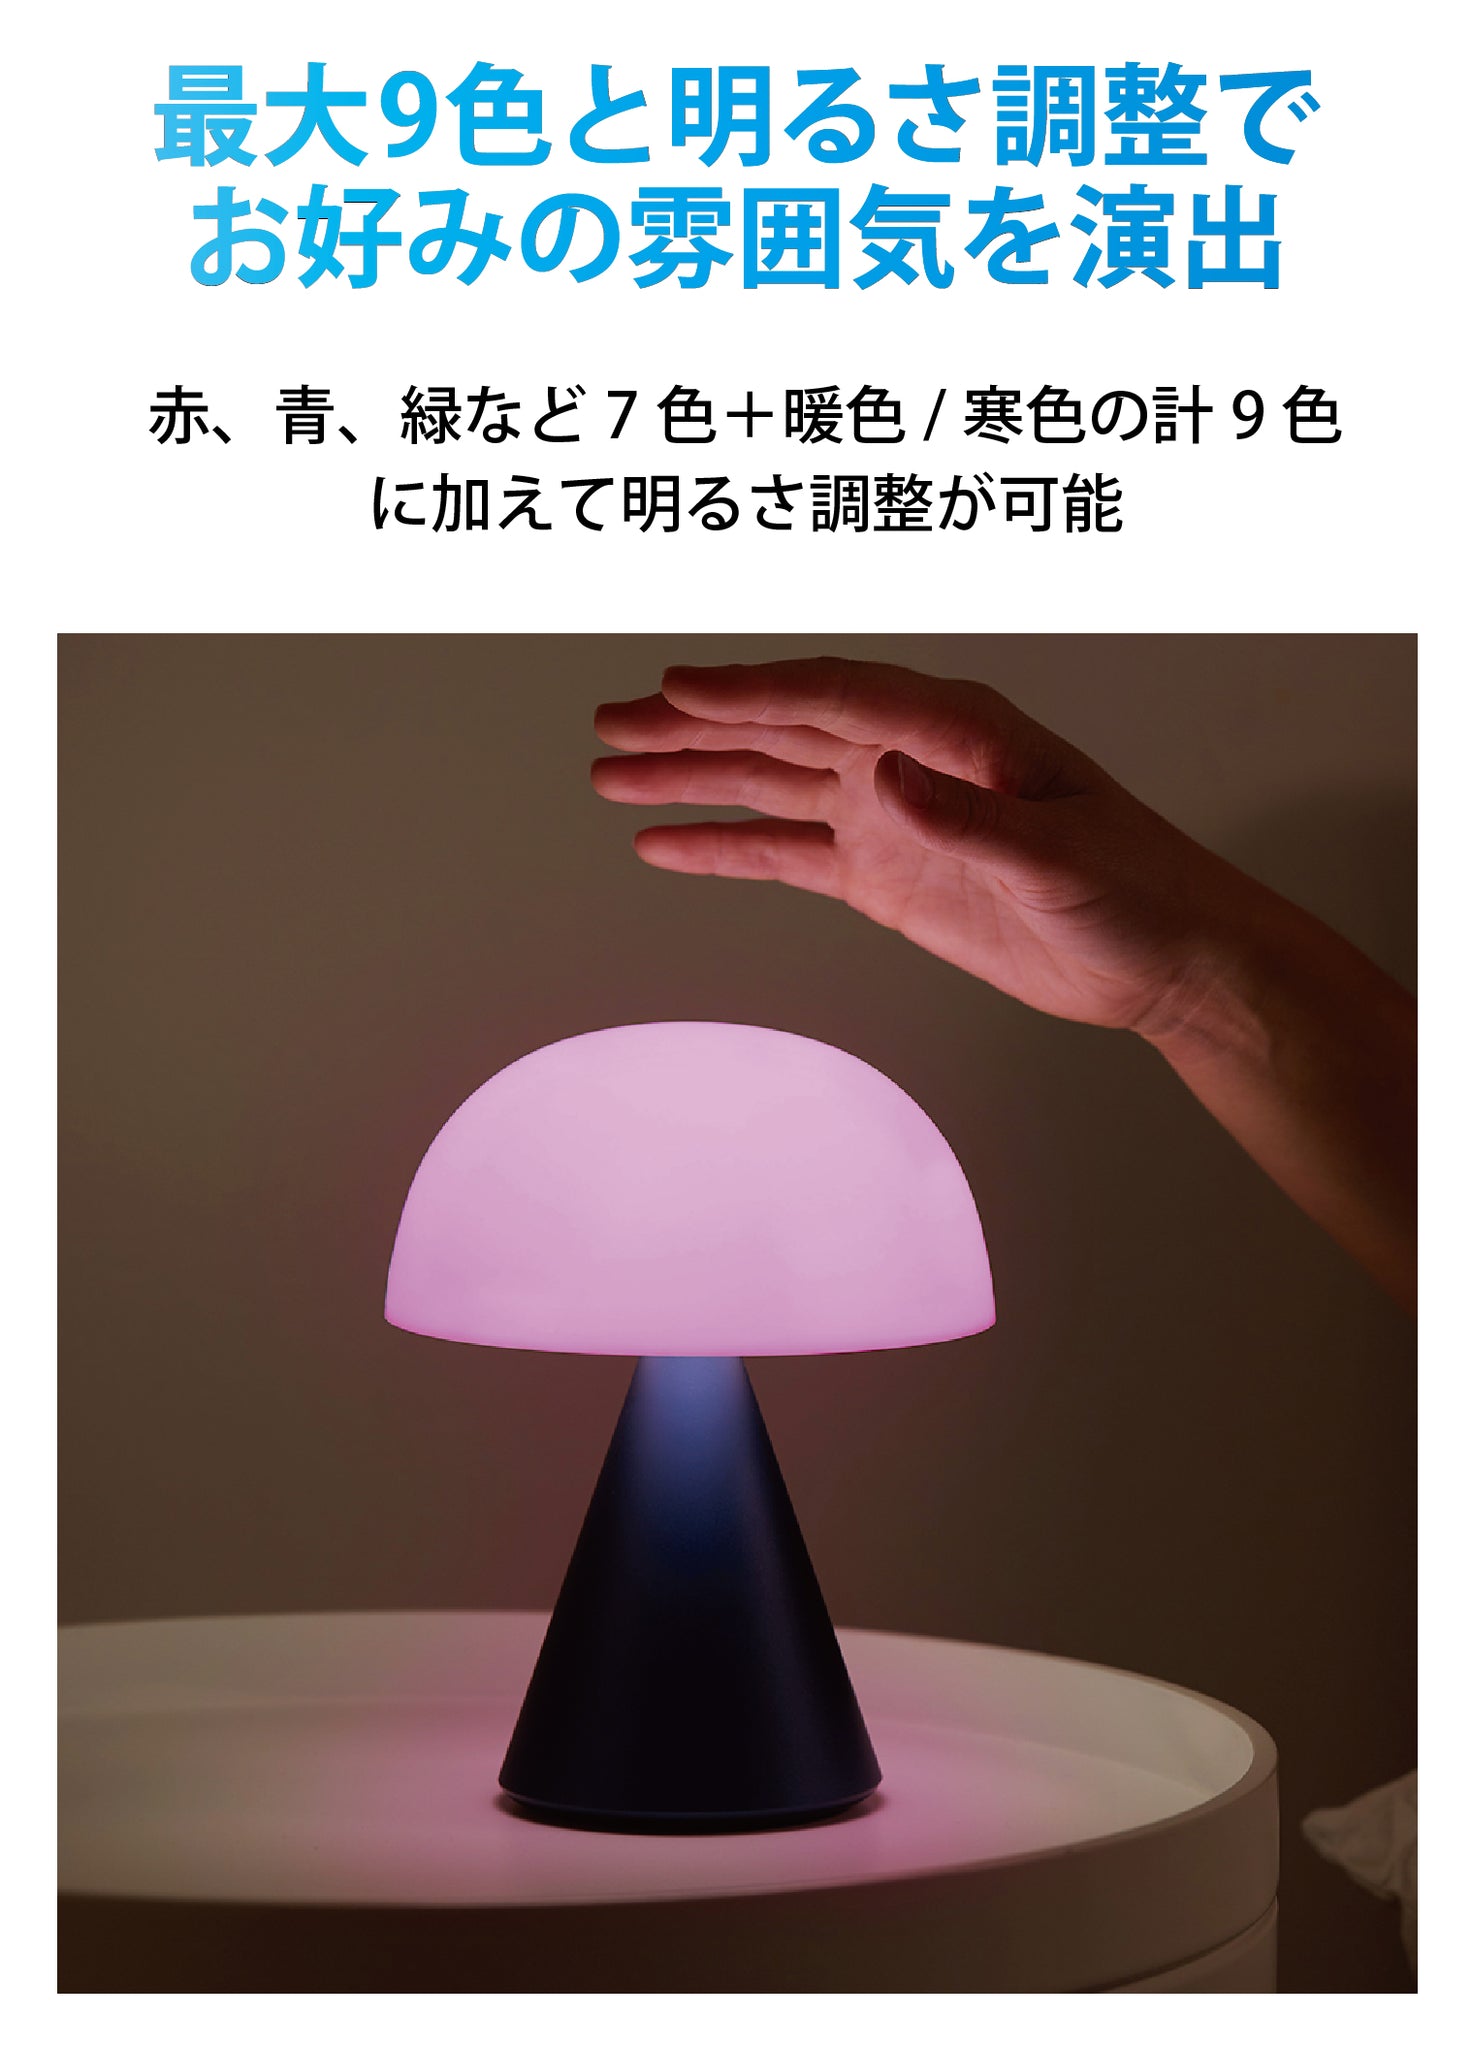 LEXON（レクソン） 防水仕様大型LEDランプ MINA L LH65 – LEXON JAPAN